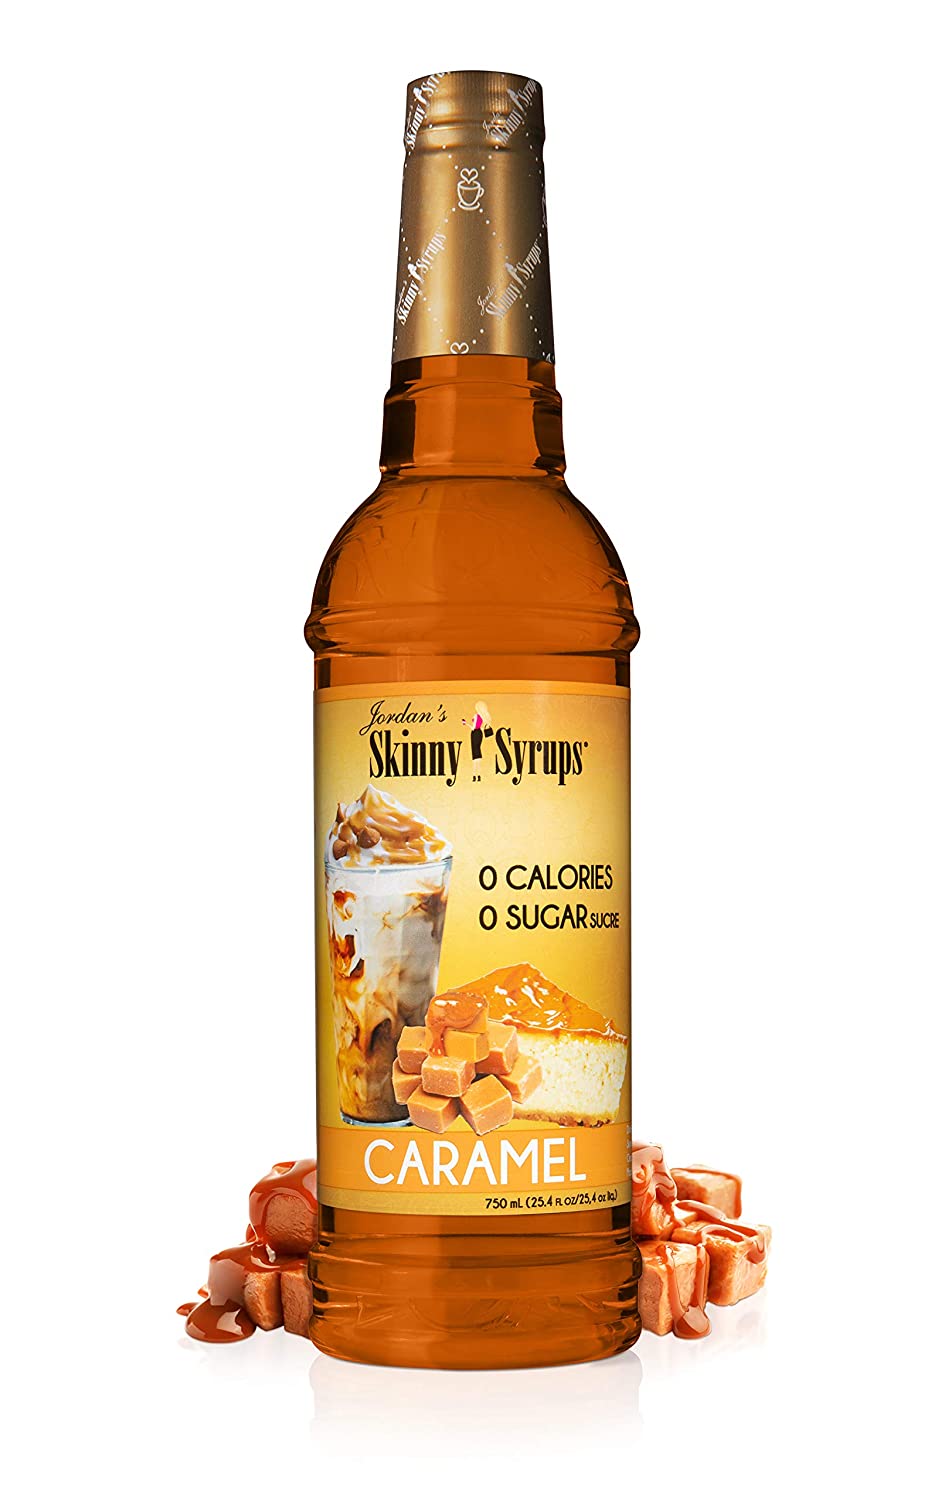 Jordan's Skinny Gourmet Syrups Sugar Free, Caramel, 25.4-Ounce $6.97